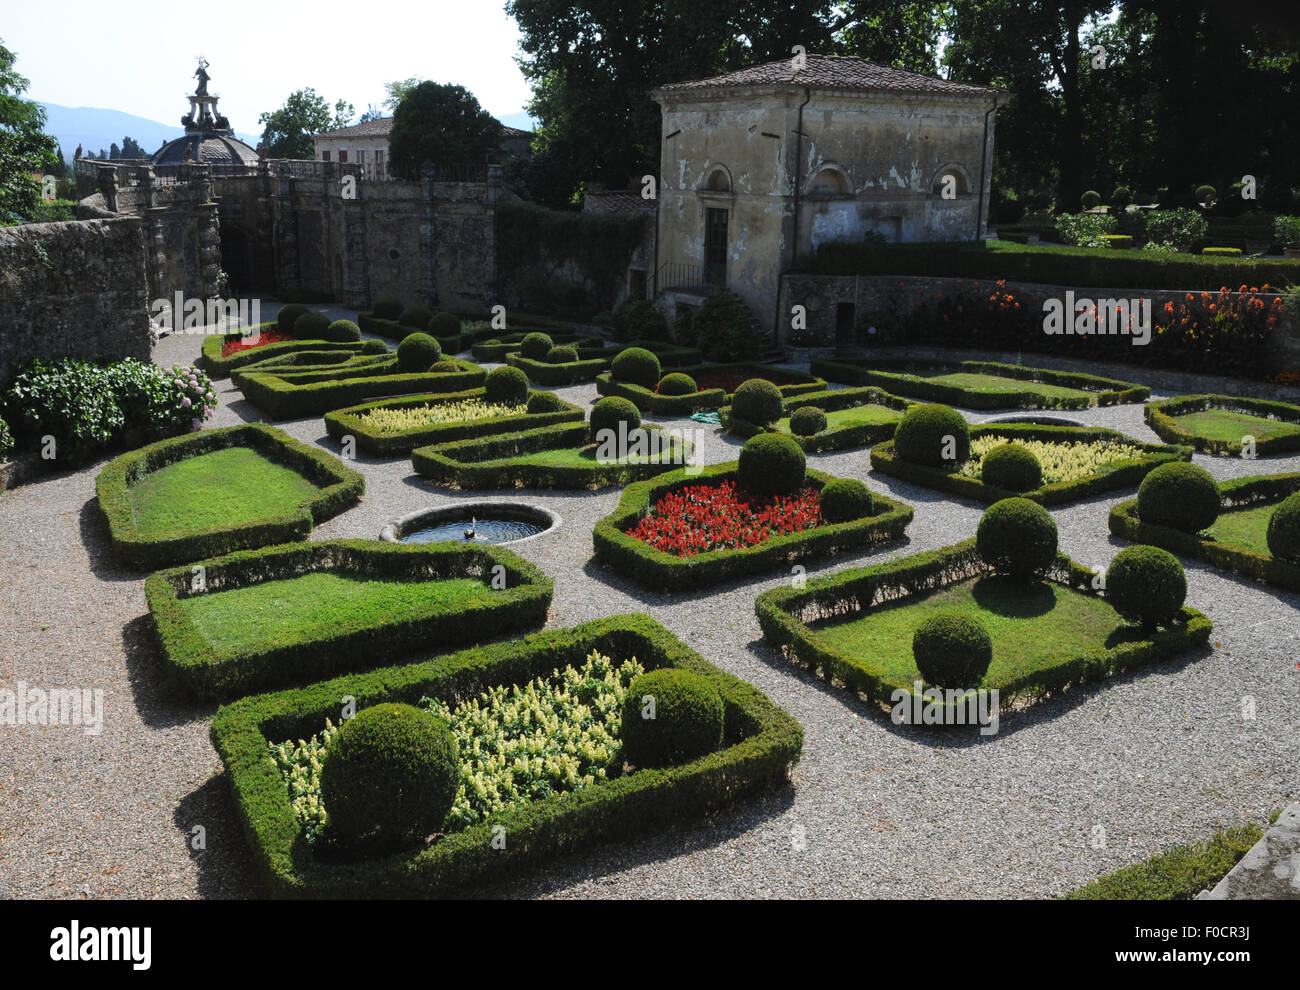 Il giardino fiorito presso la Villa Torrigiani, una Toscana villa storica risalente alla seconda metà del XVI secolo. Foto Stock